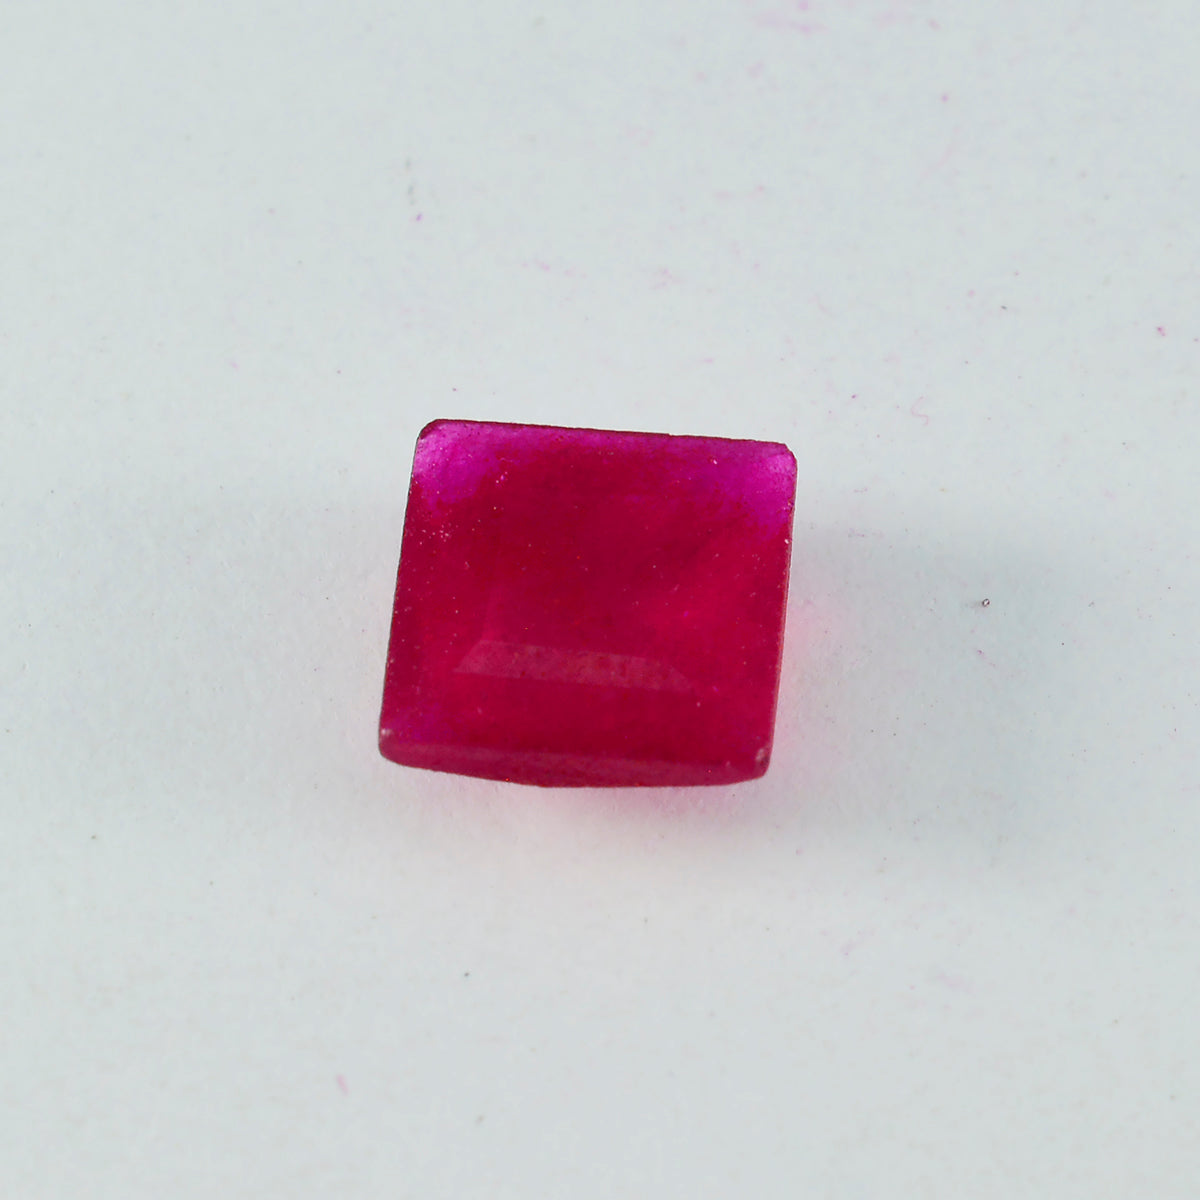 Riyogems 1 Stück echter roter Jaspis, facettiert, 14 x 14 mm, quadratische Form, ausgezeichnete Qualität, loser Edelstein